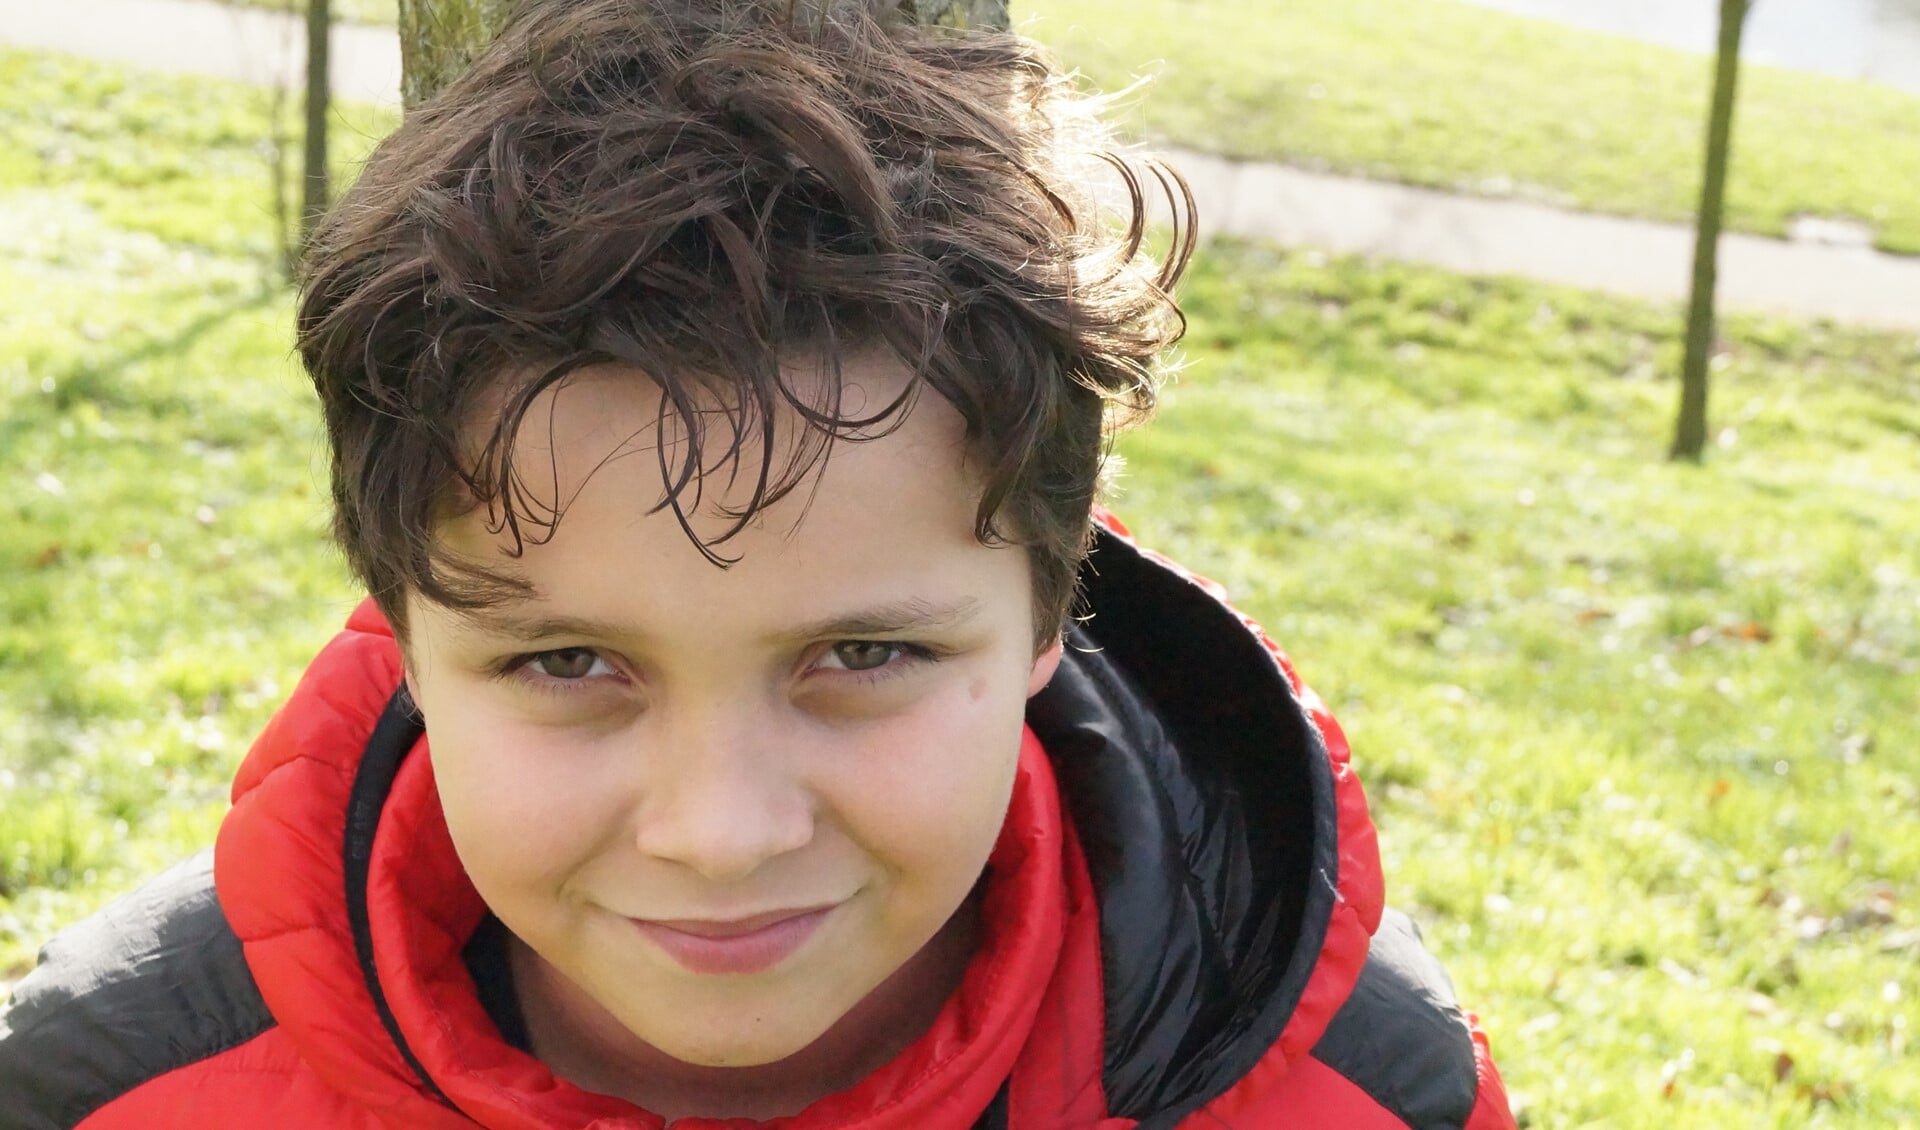 De 10-jarige Rodrigo heeft geen problemen met thuisonderwijs, alleen is zijn moeder wel strenger dan de juf. (Privéfoto)